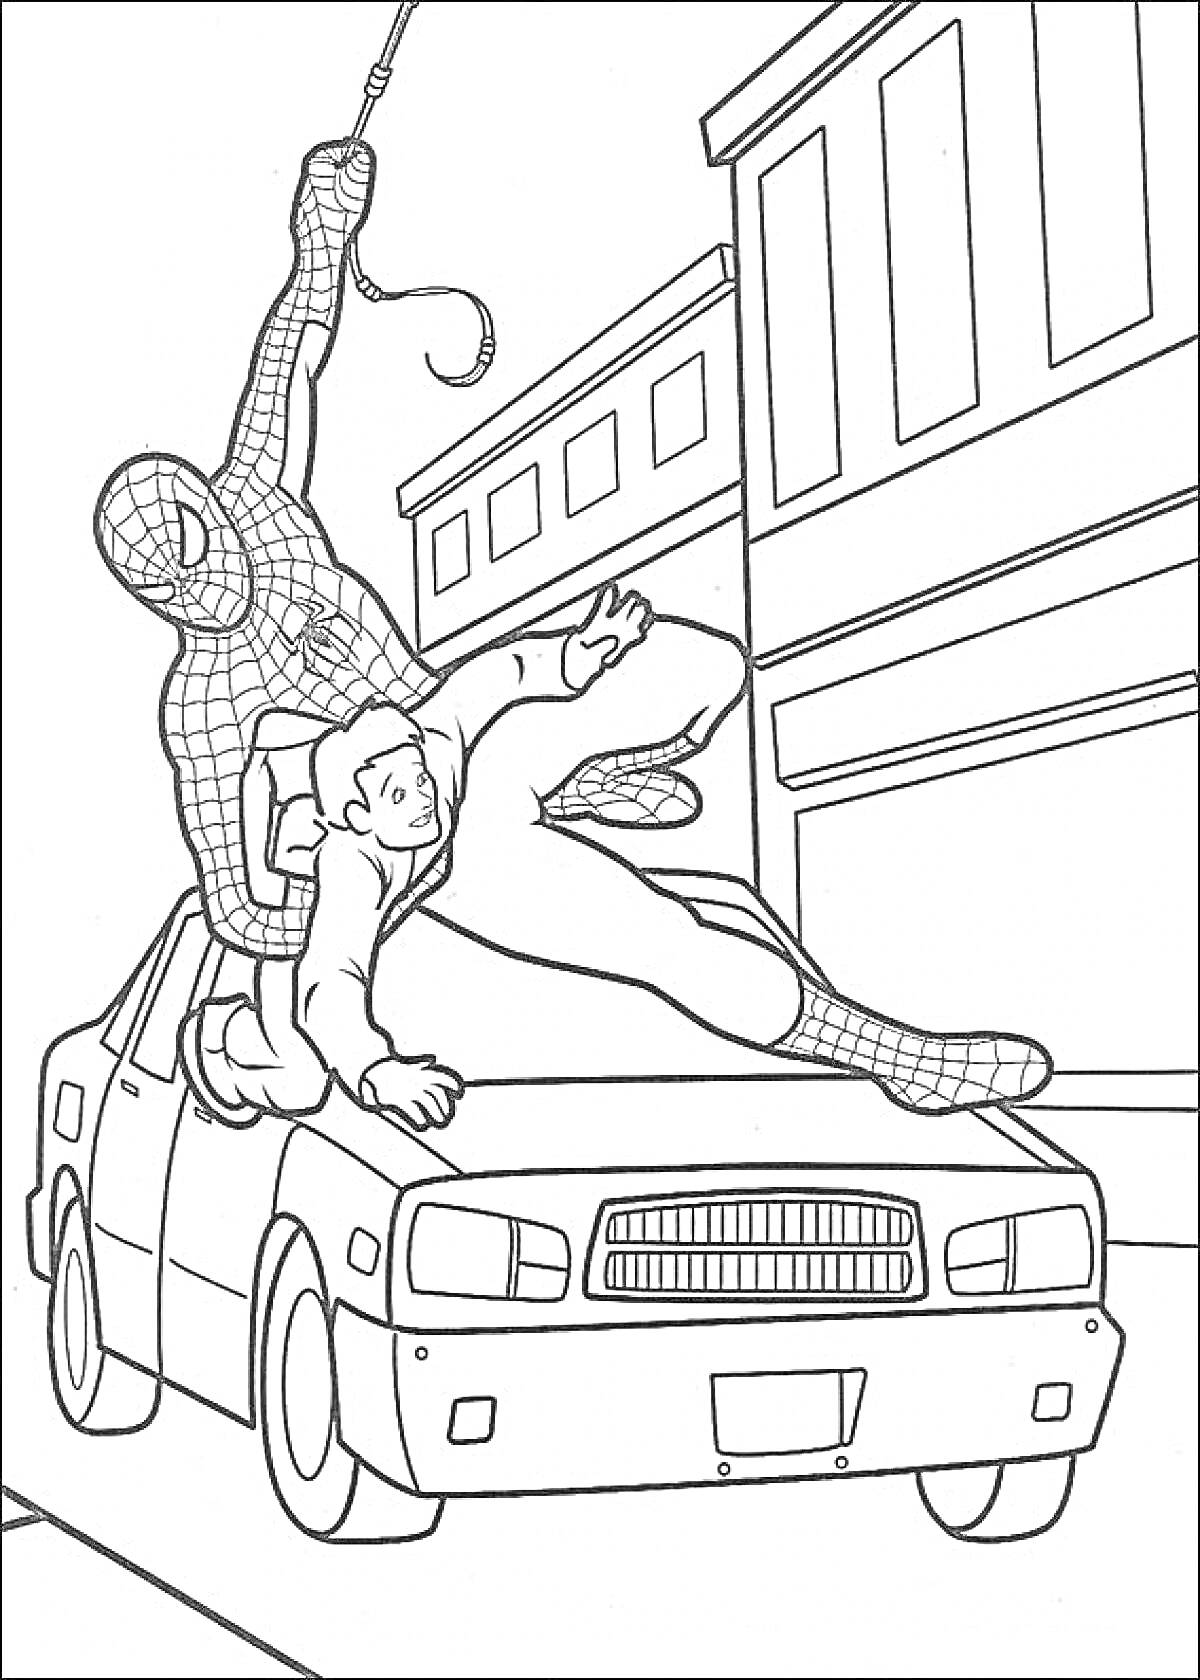 Раскраска Герой-паук на паутине спасает человека на крыше машины в городе